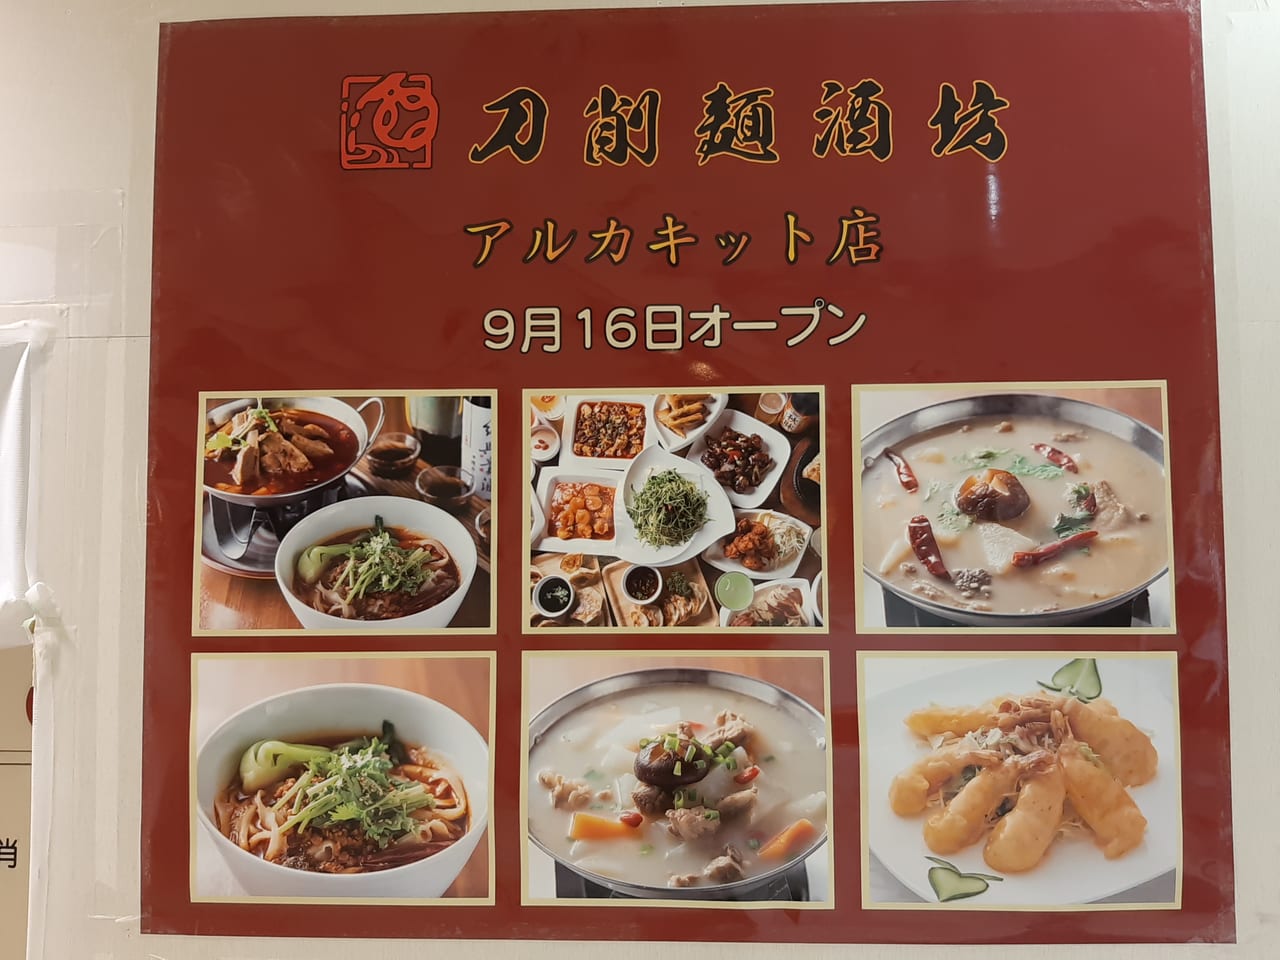 アルカキット刀削麺開店お知らせ